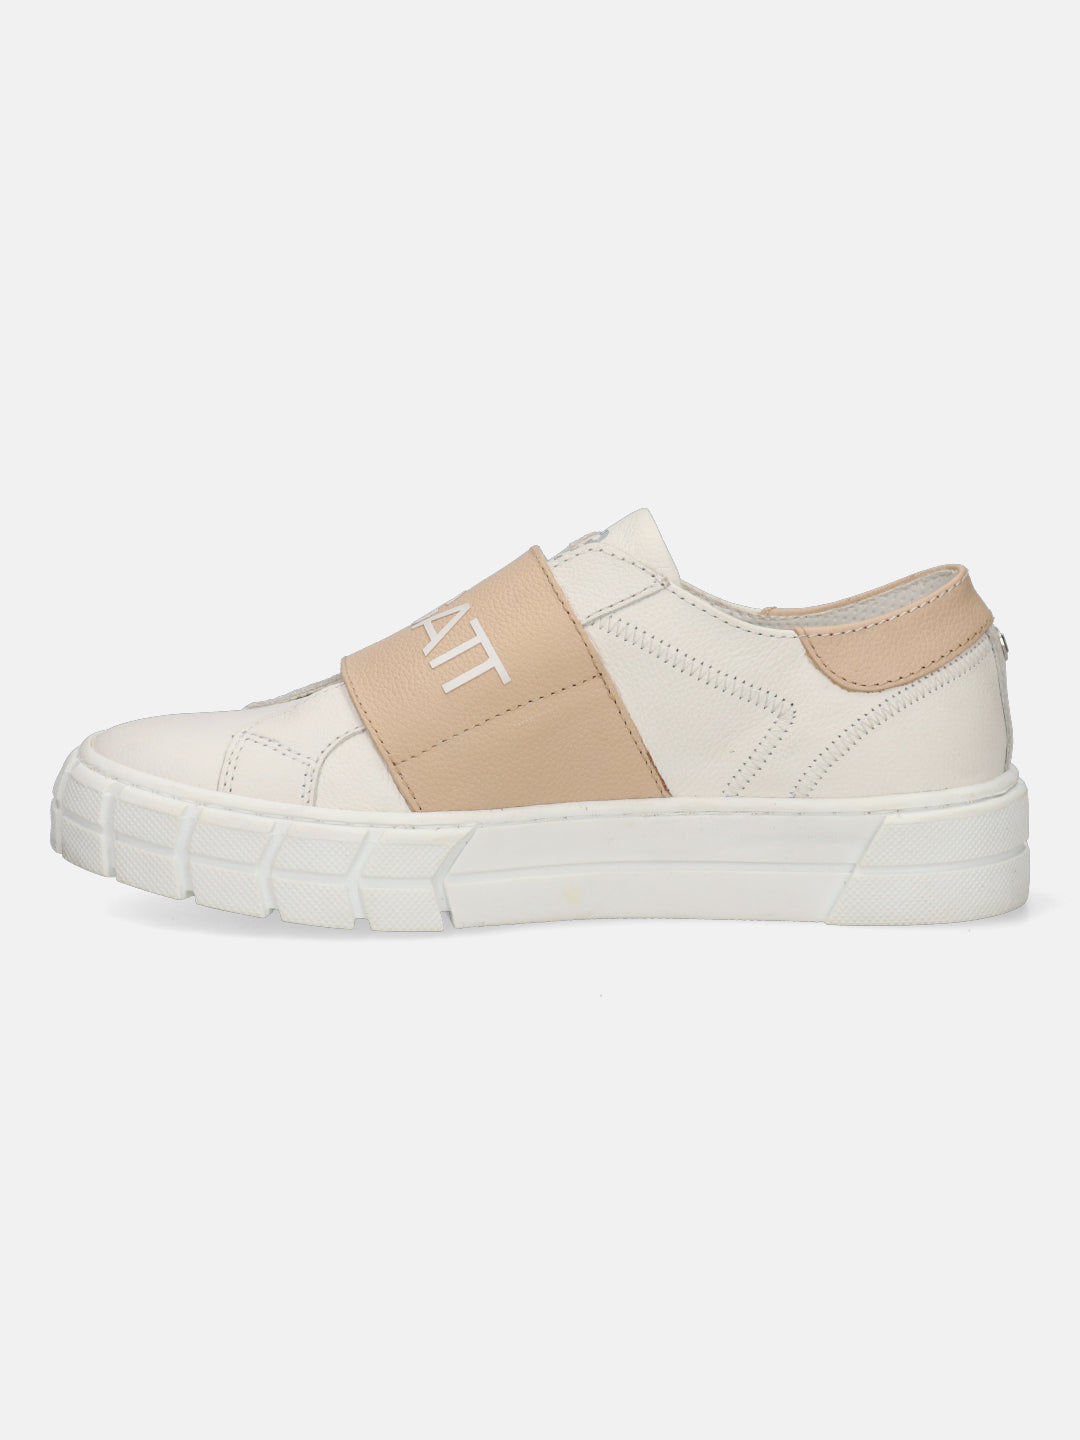 Tia White & Sand Sneakers - BAGATT